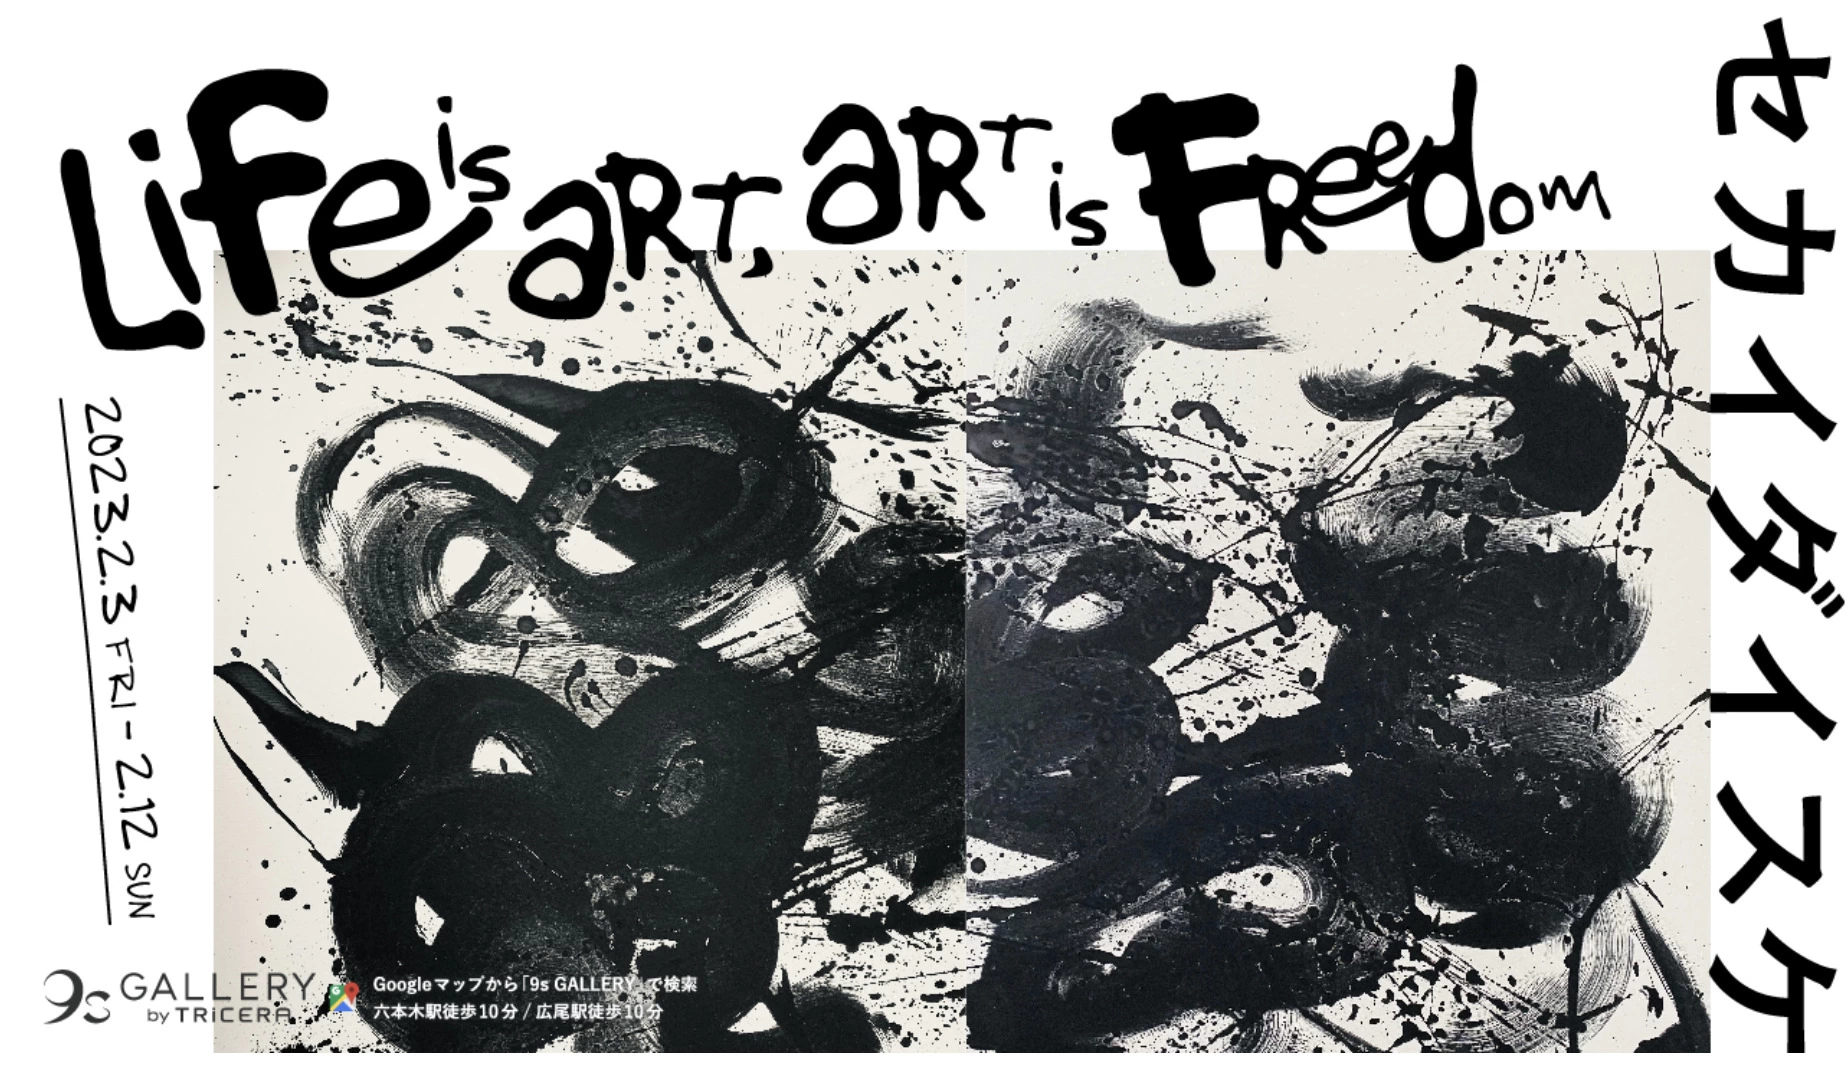 セカイダイスケ —「Life is Art, Art is Freedom」